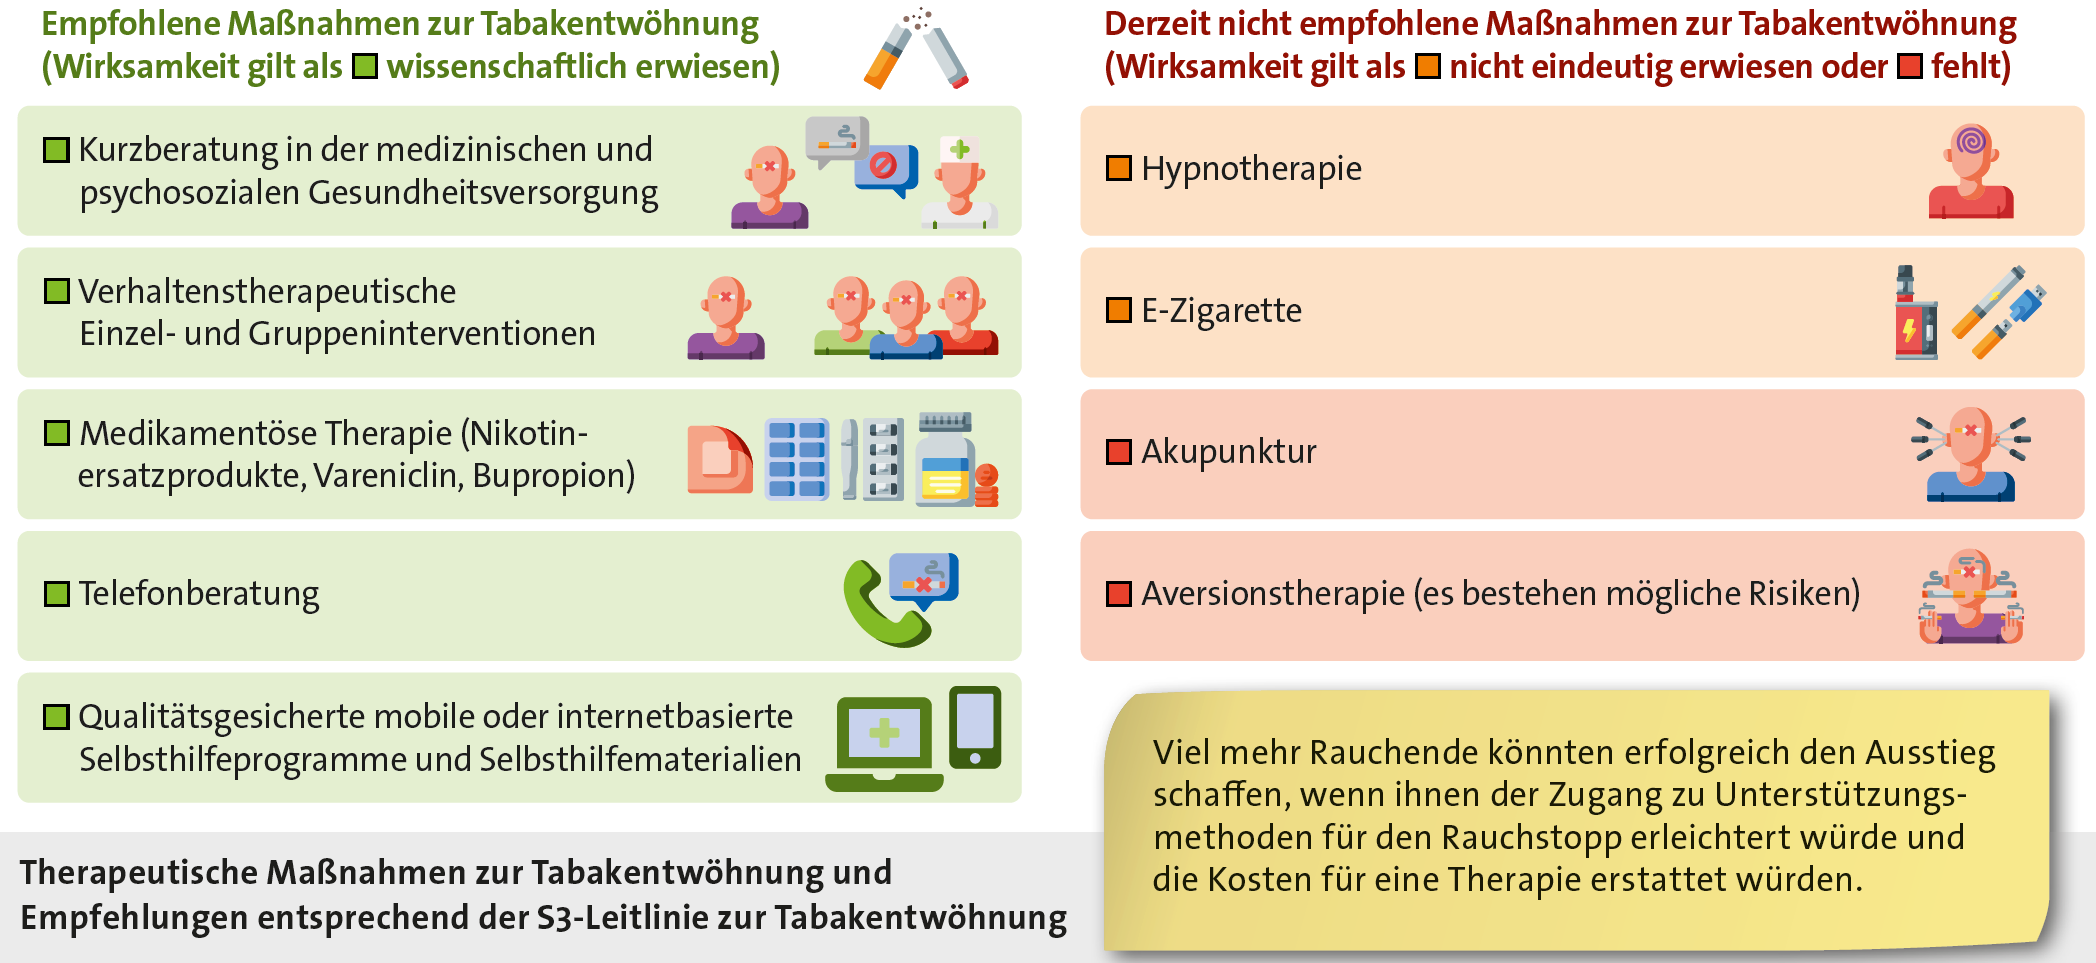 Abbildung: Therapeutische Maßnahmen zur Tabakentwöhnung und Empfehlungen entsprechend der S3-Leitlinie zur Tabakentwöhnung